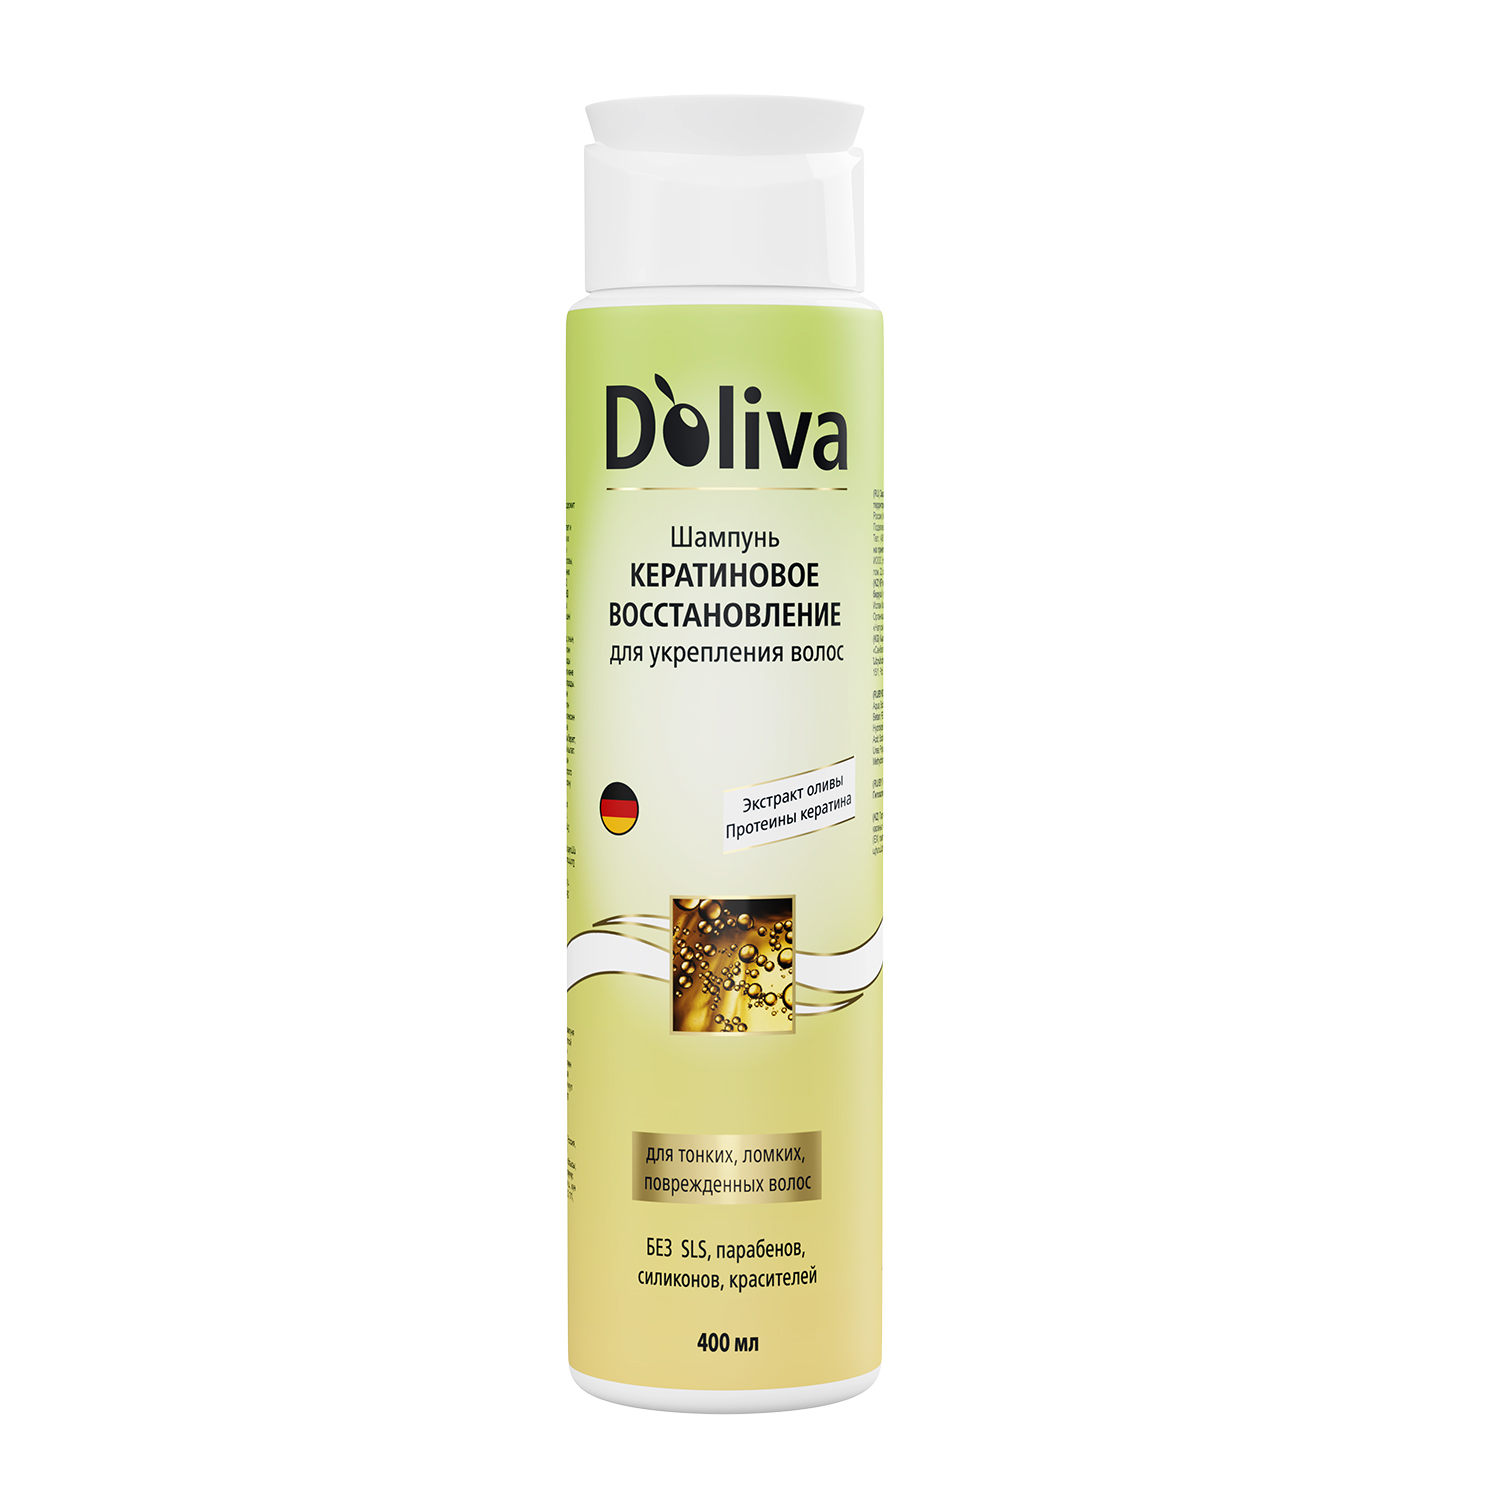 Шампунь D’oliva для укрепления волос, кератиновое восстановление, 400 мл